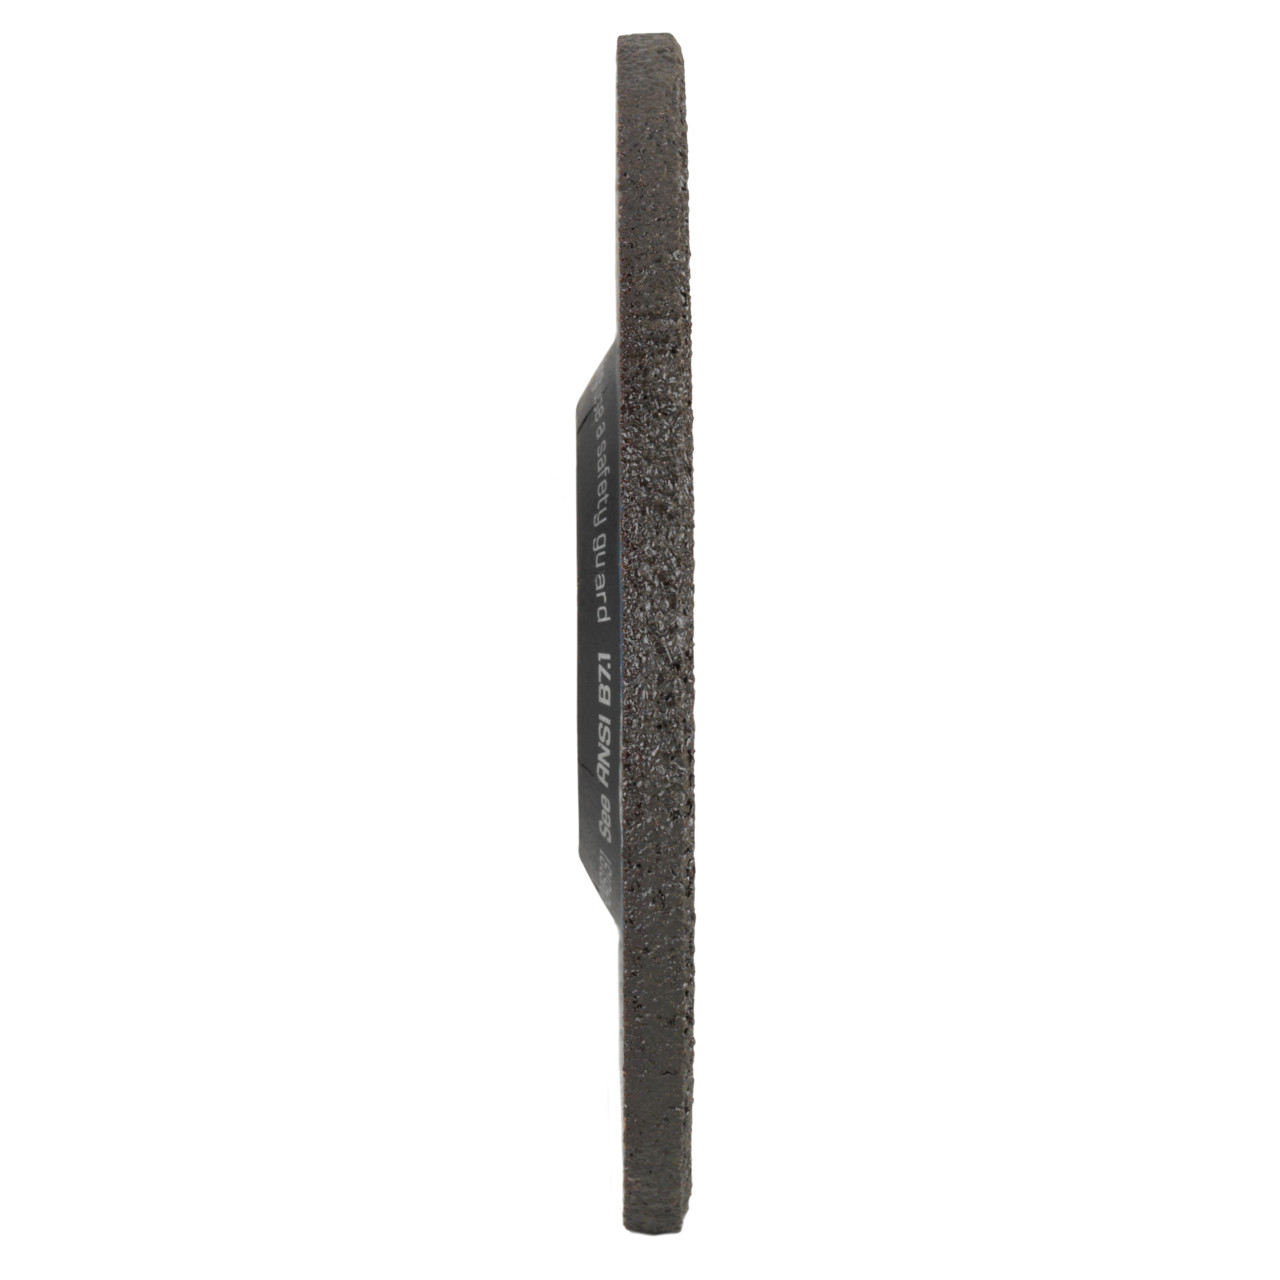 TYROLIT slijpschijf DxUxH 178x4x22,23 2in1 voor staal en roestvrij staal, vorm: 27 - offset-uitvoering, Art. 5349